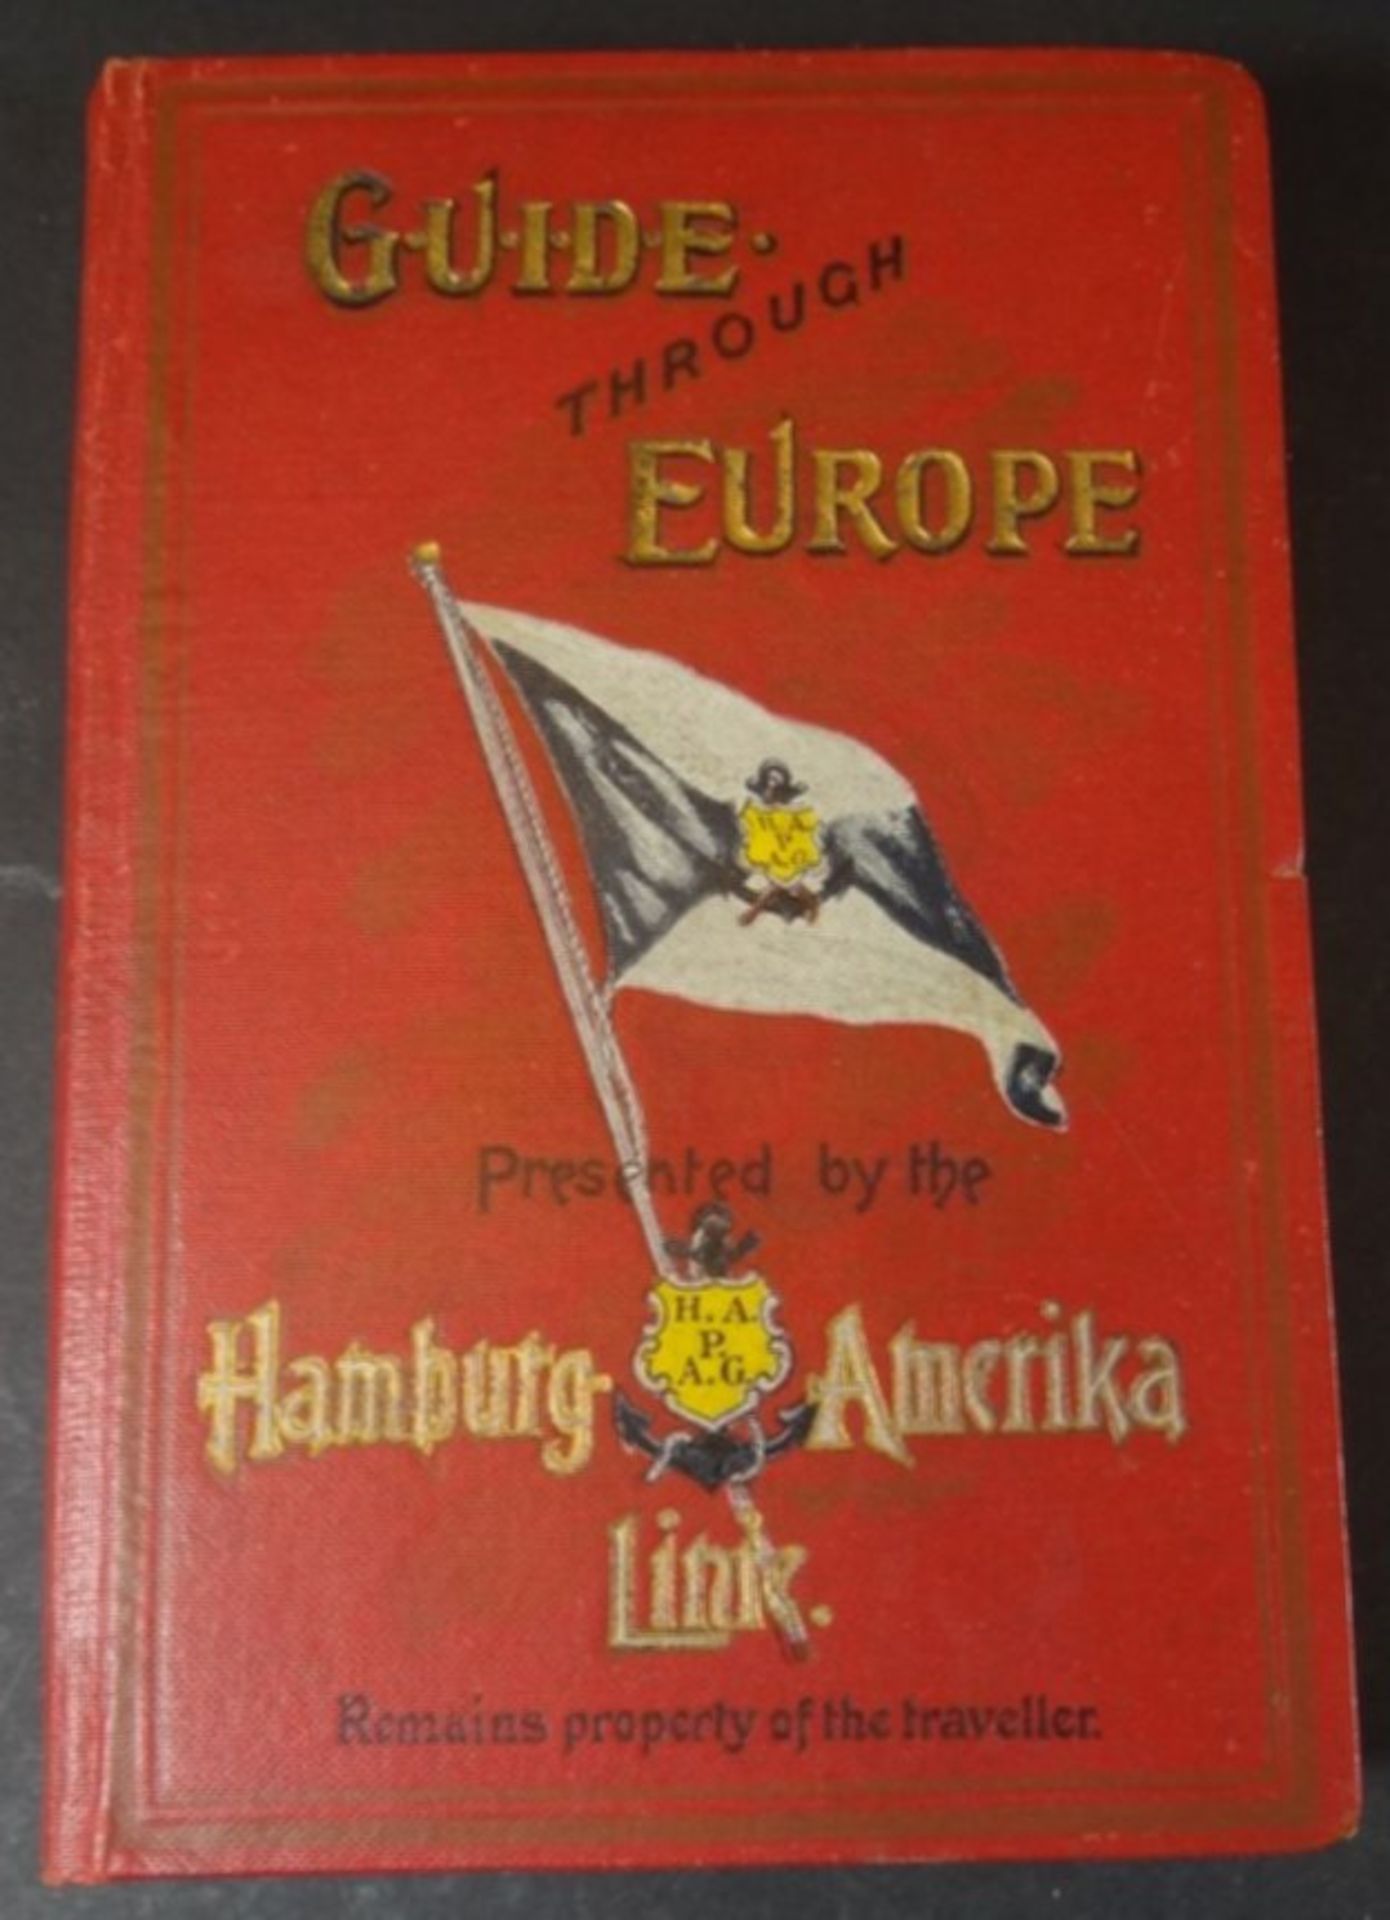 Reiseführer "Guide through Europe" 1913, presented by the Hamburg-America-Line, gut erhalten